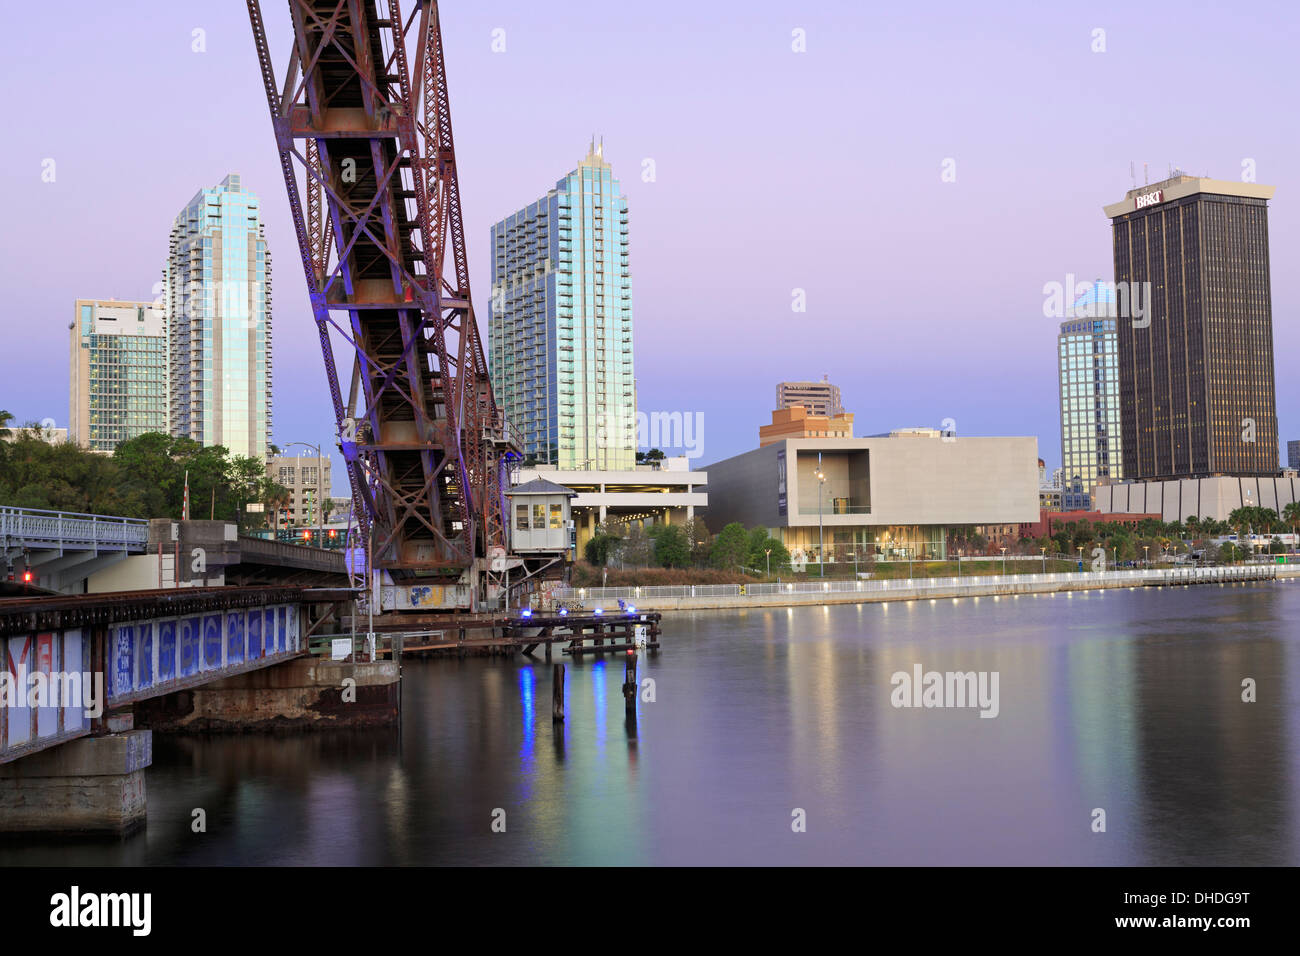 Cass Street et la CSX ponts sur la rivière Hillsborough, Tampa, Floride, États-Unis d'Amérique, Amérique du Nord Banque D'Images